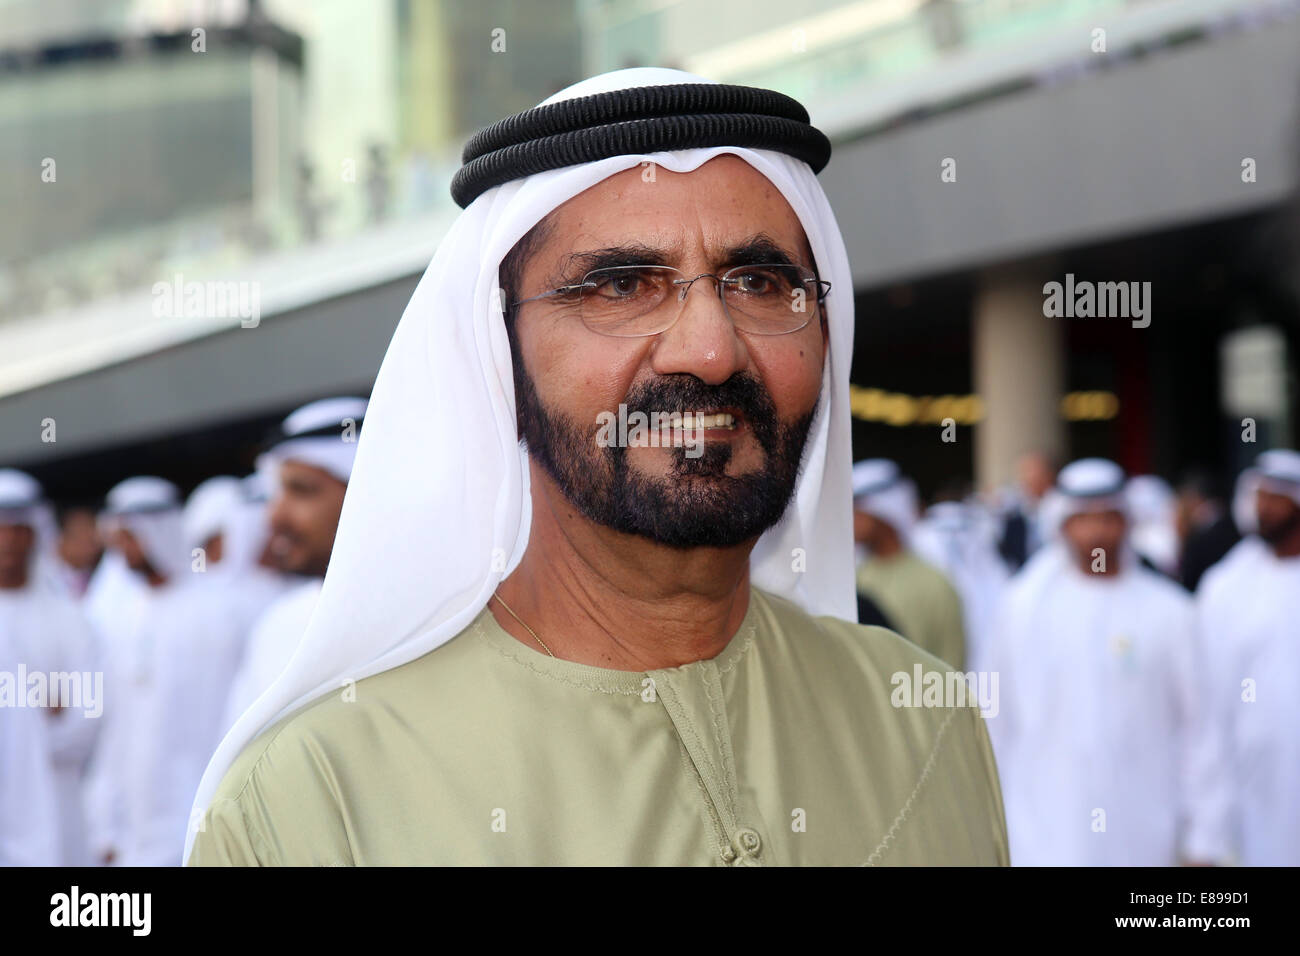 Dubai, United Arab Emirates, Sheikh Mohammed bin Rashid Al Maktoum